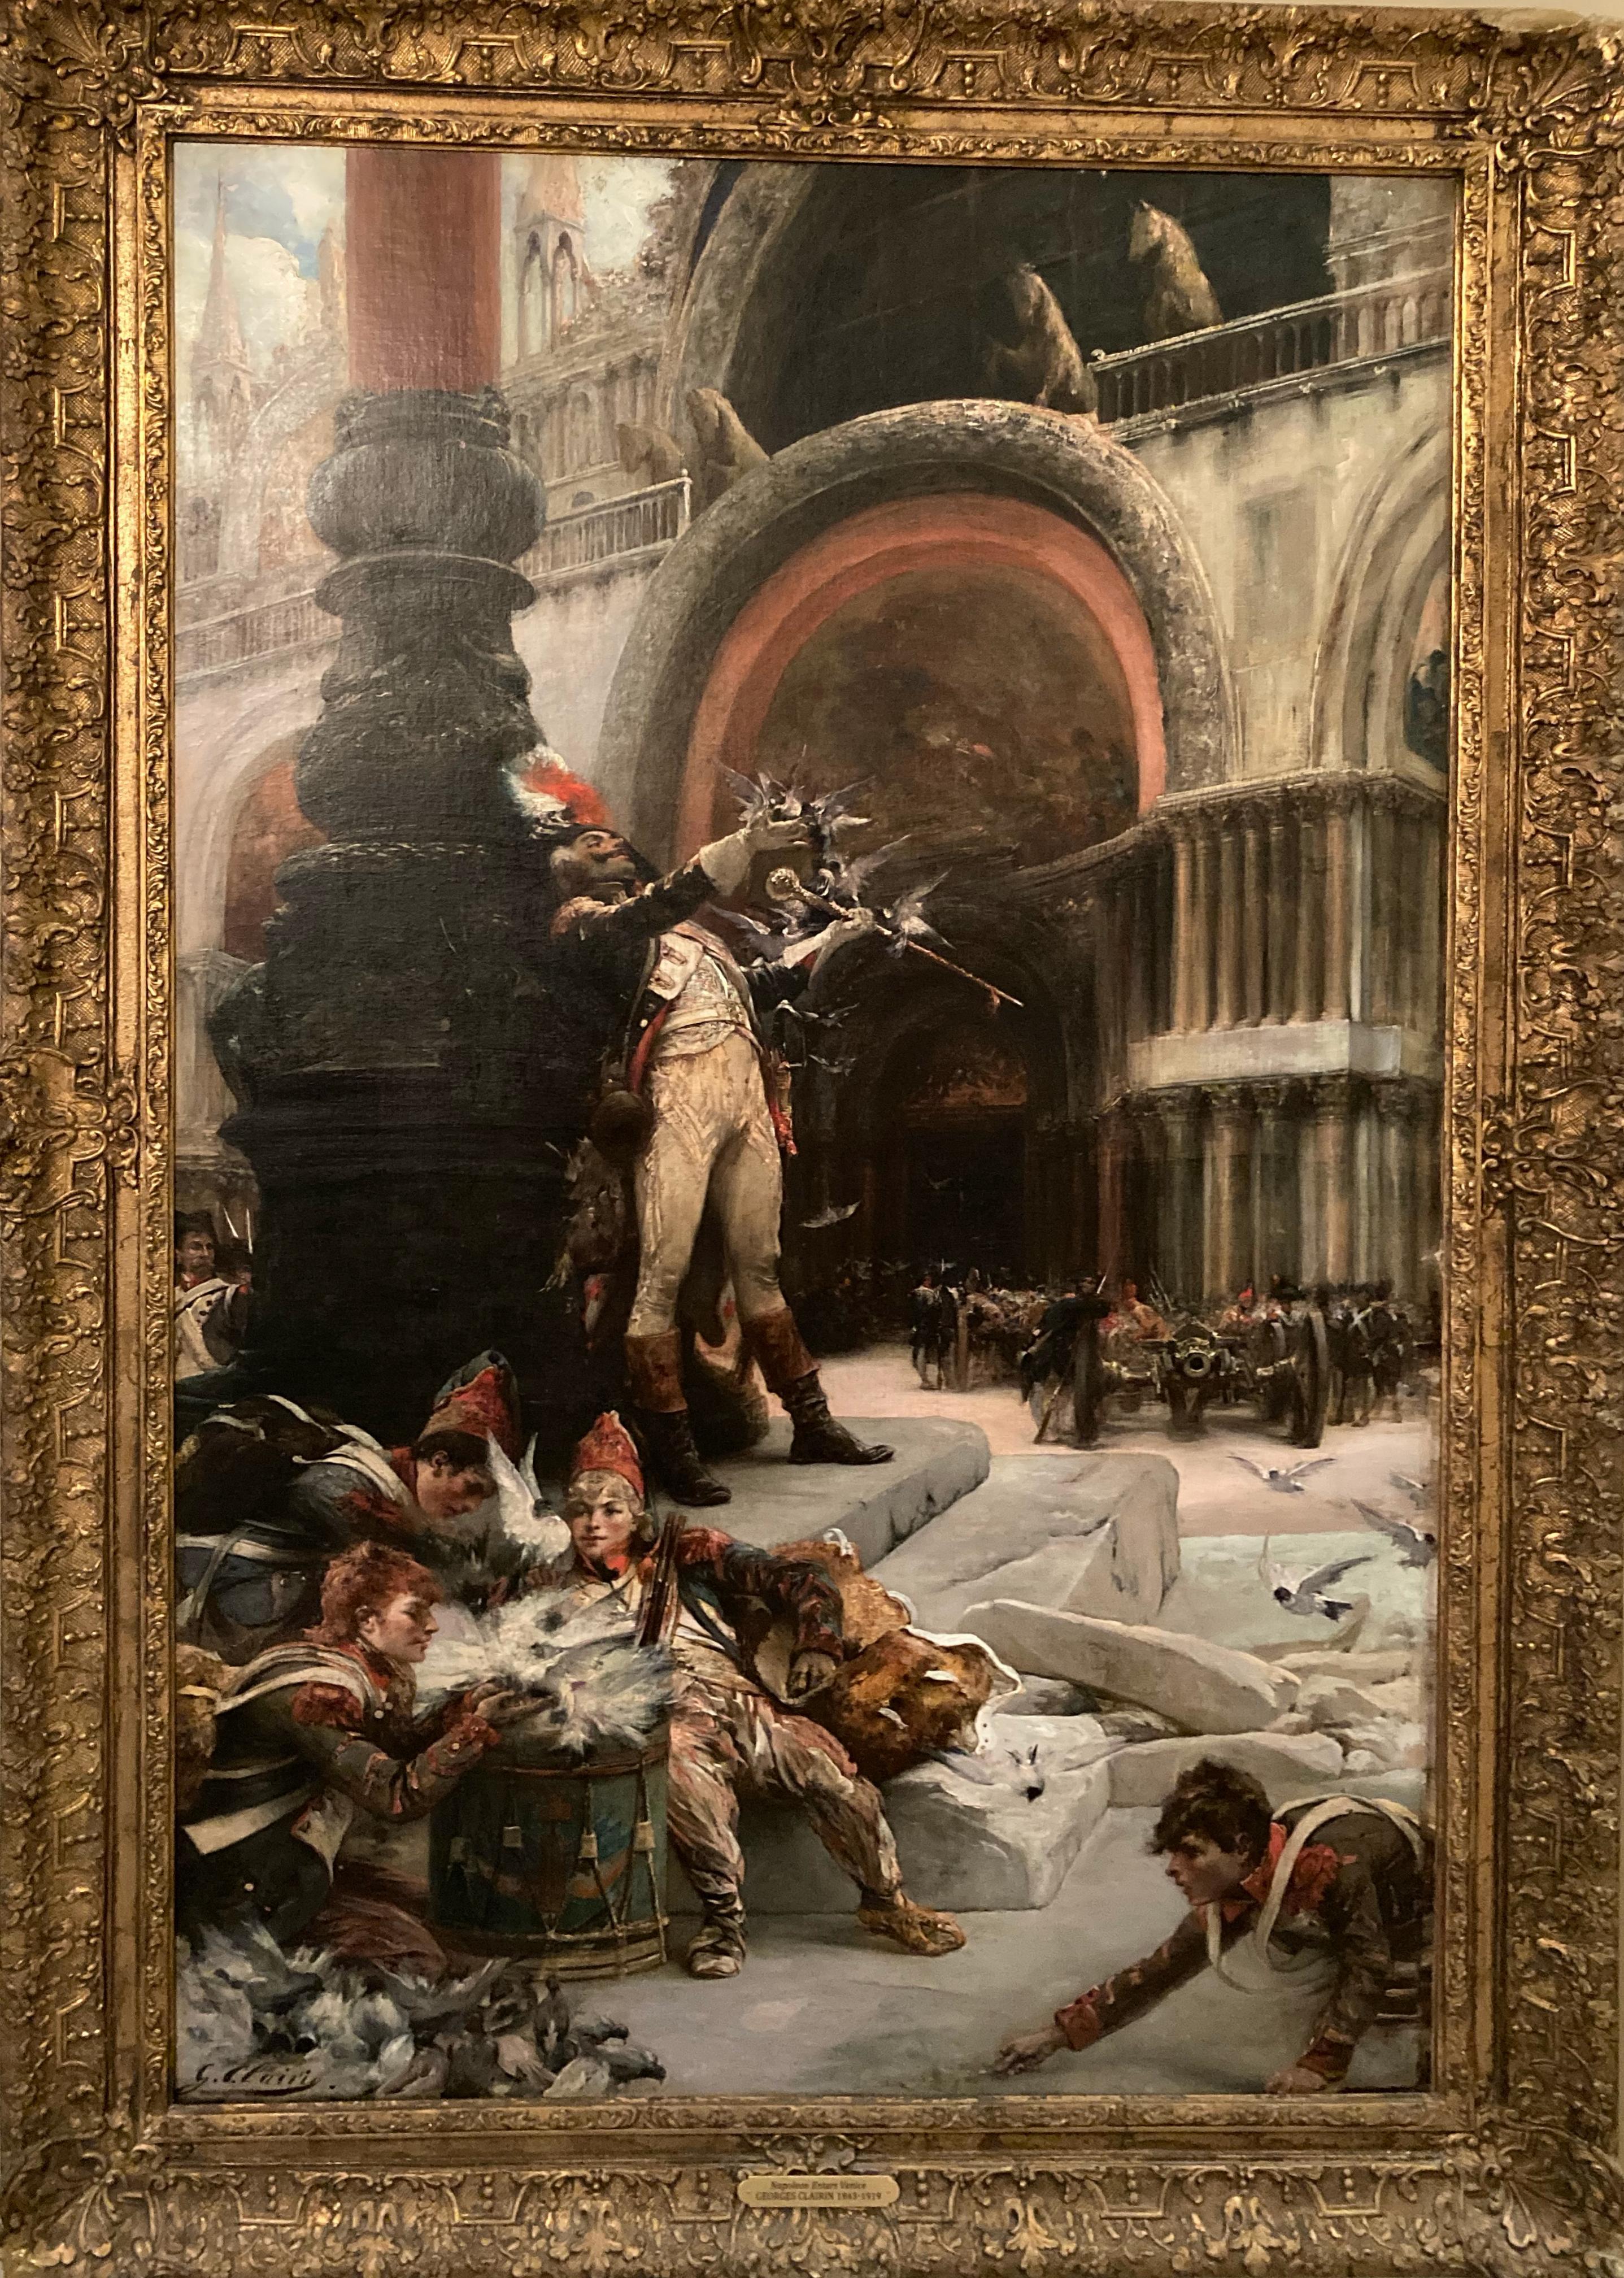 Le Dompteur de Pigeons" (z. B. Christie's) – Großes antikes impressionistisches Gemälde